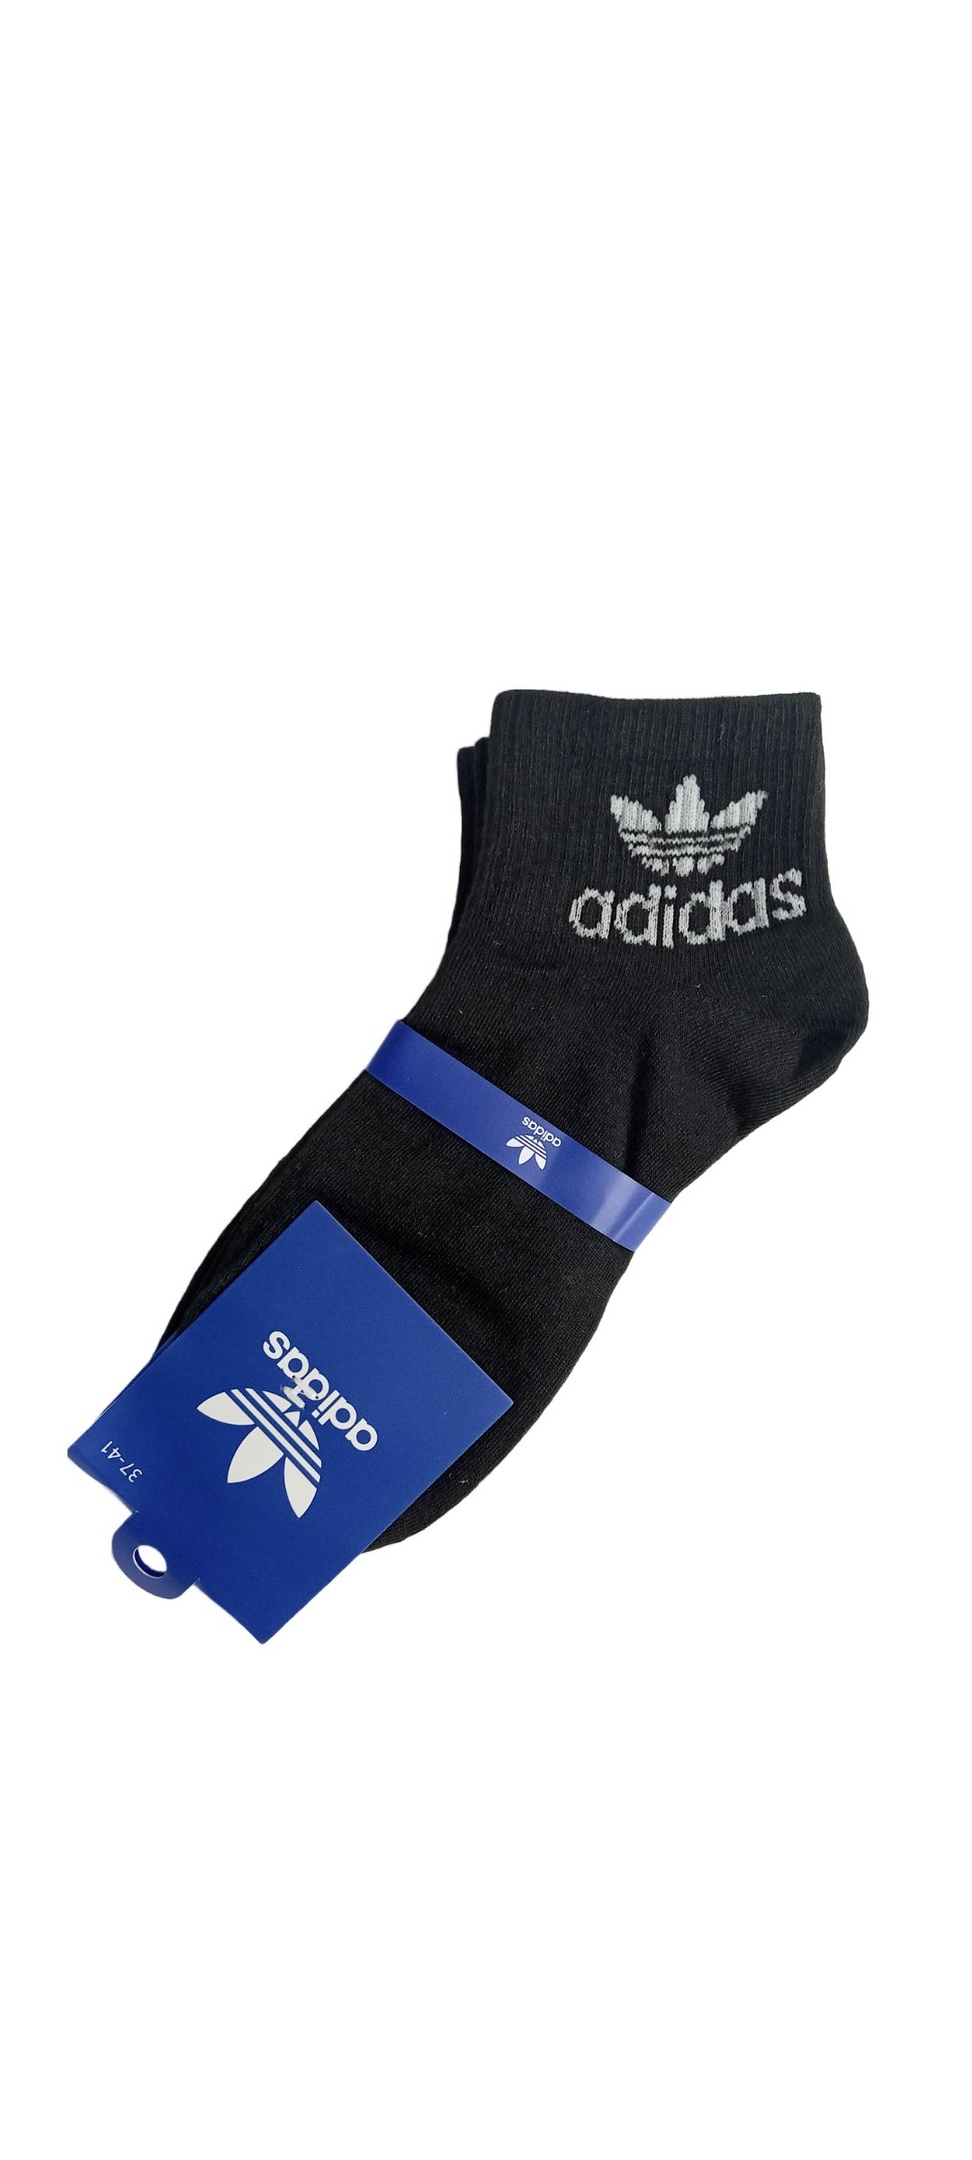 Комплект носков женских Adidas Originals gnk черных 37-41, 2 пары